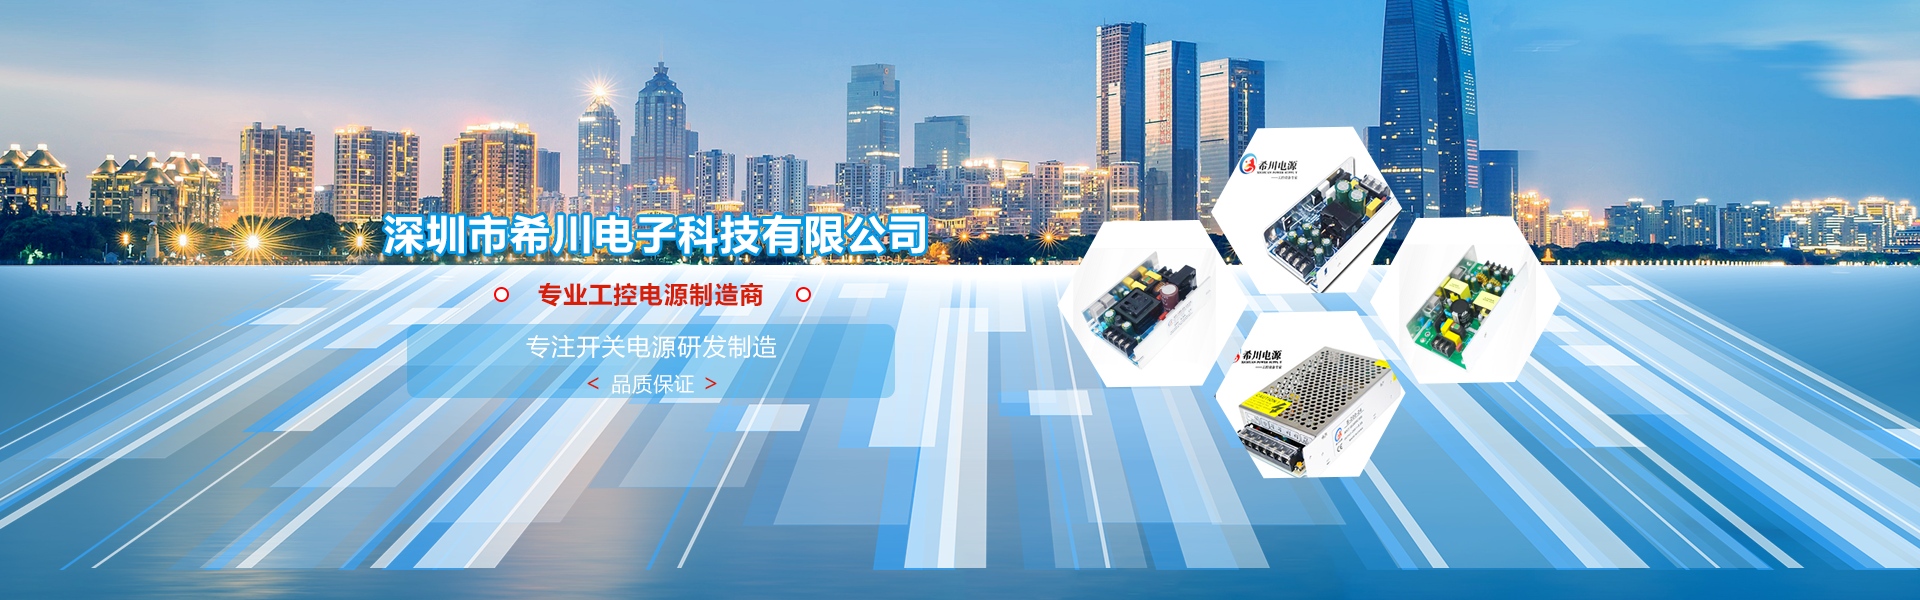 深圳市希川電子科技有限公司與我司簽訂網站建設協議